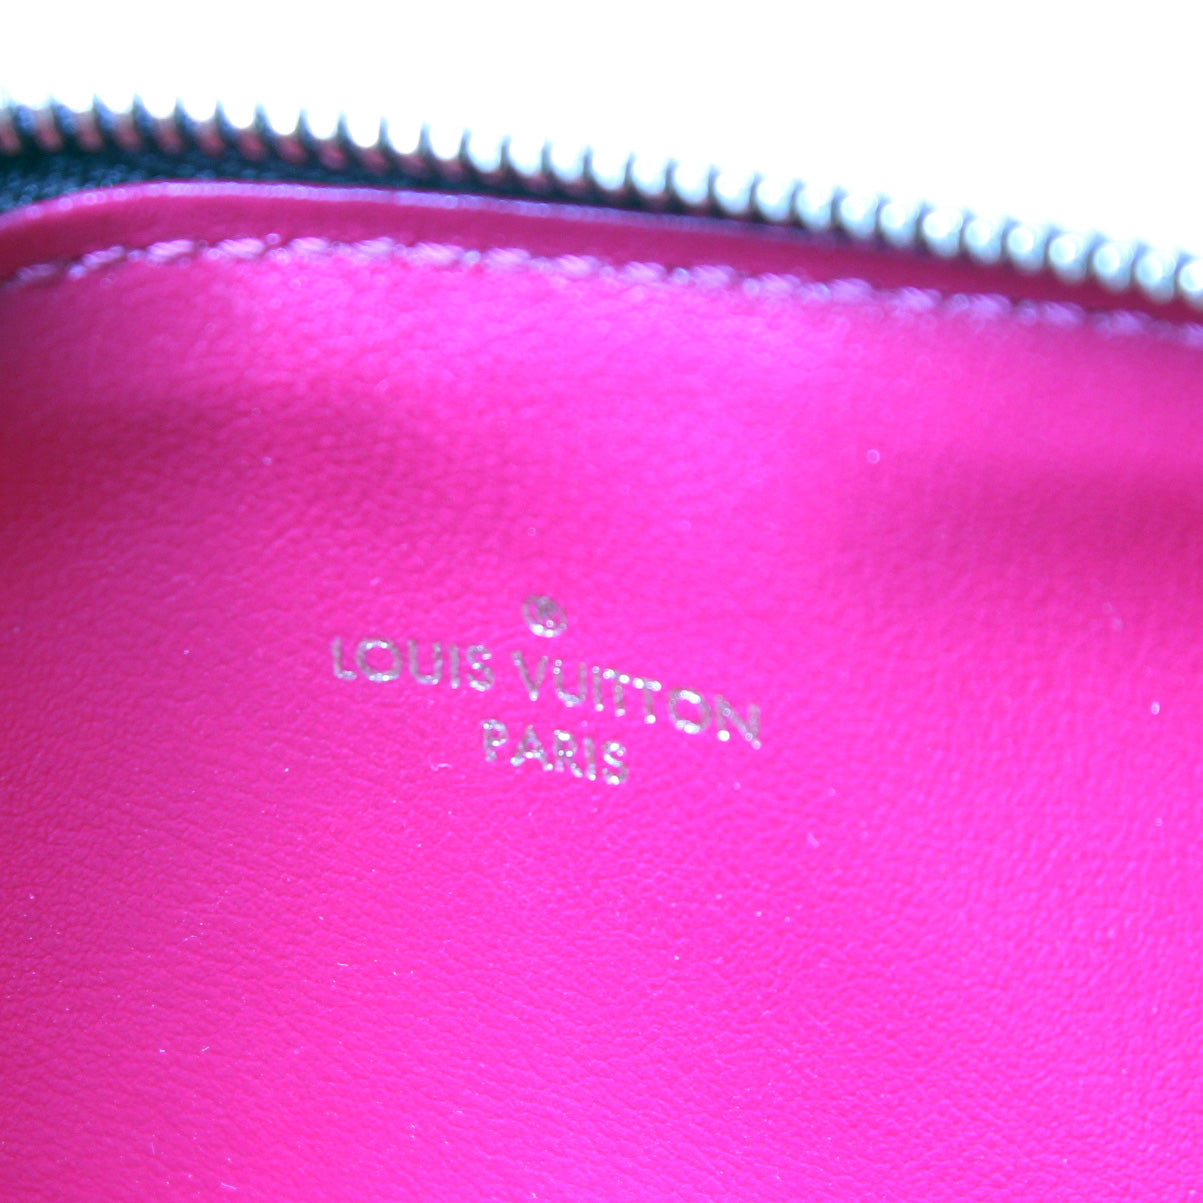 Louis Vuitton Felicie Pochette w/ Inserts